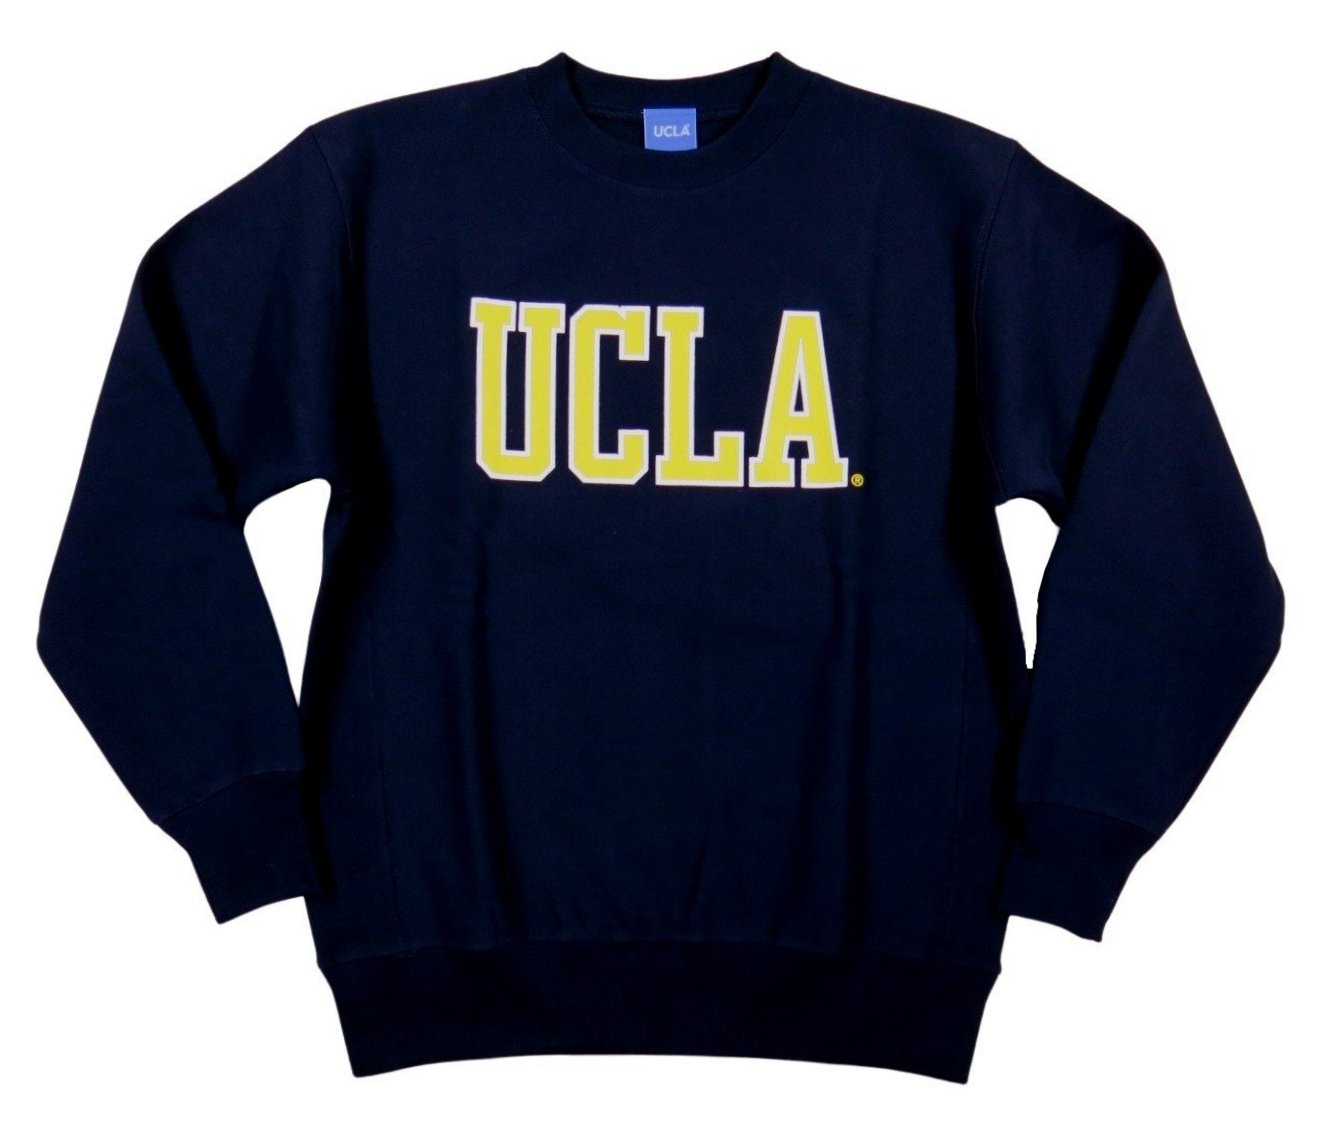 UCLA カレッジプリント ヘビーウェイト スウェットシャツ UCLA-0517